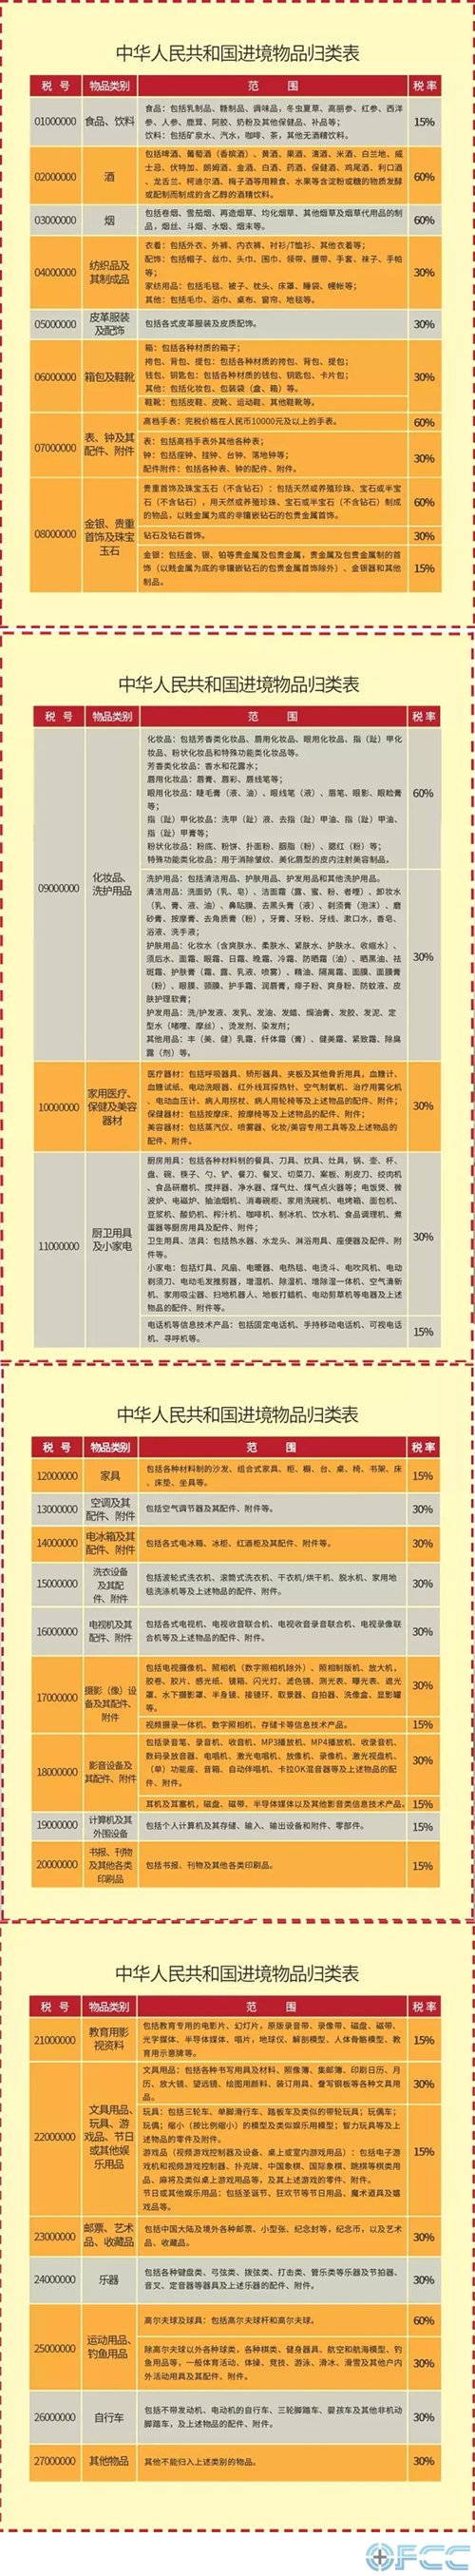 中华人民共和国进境物品归类表